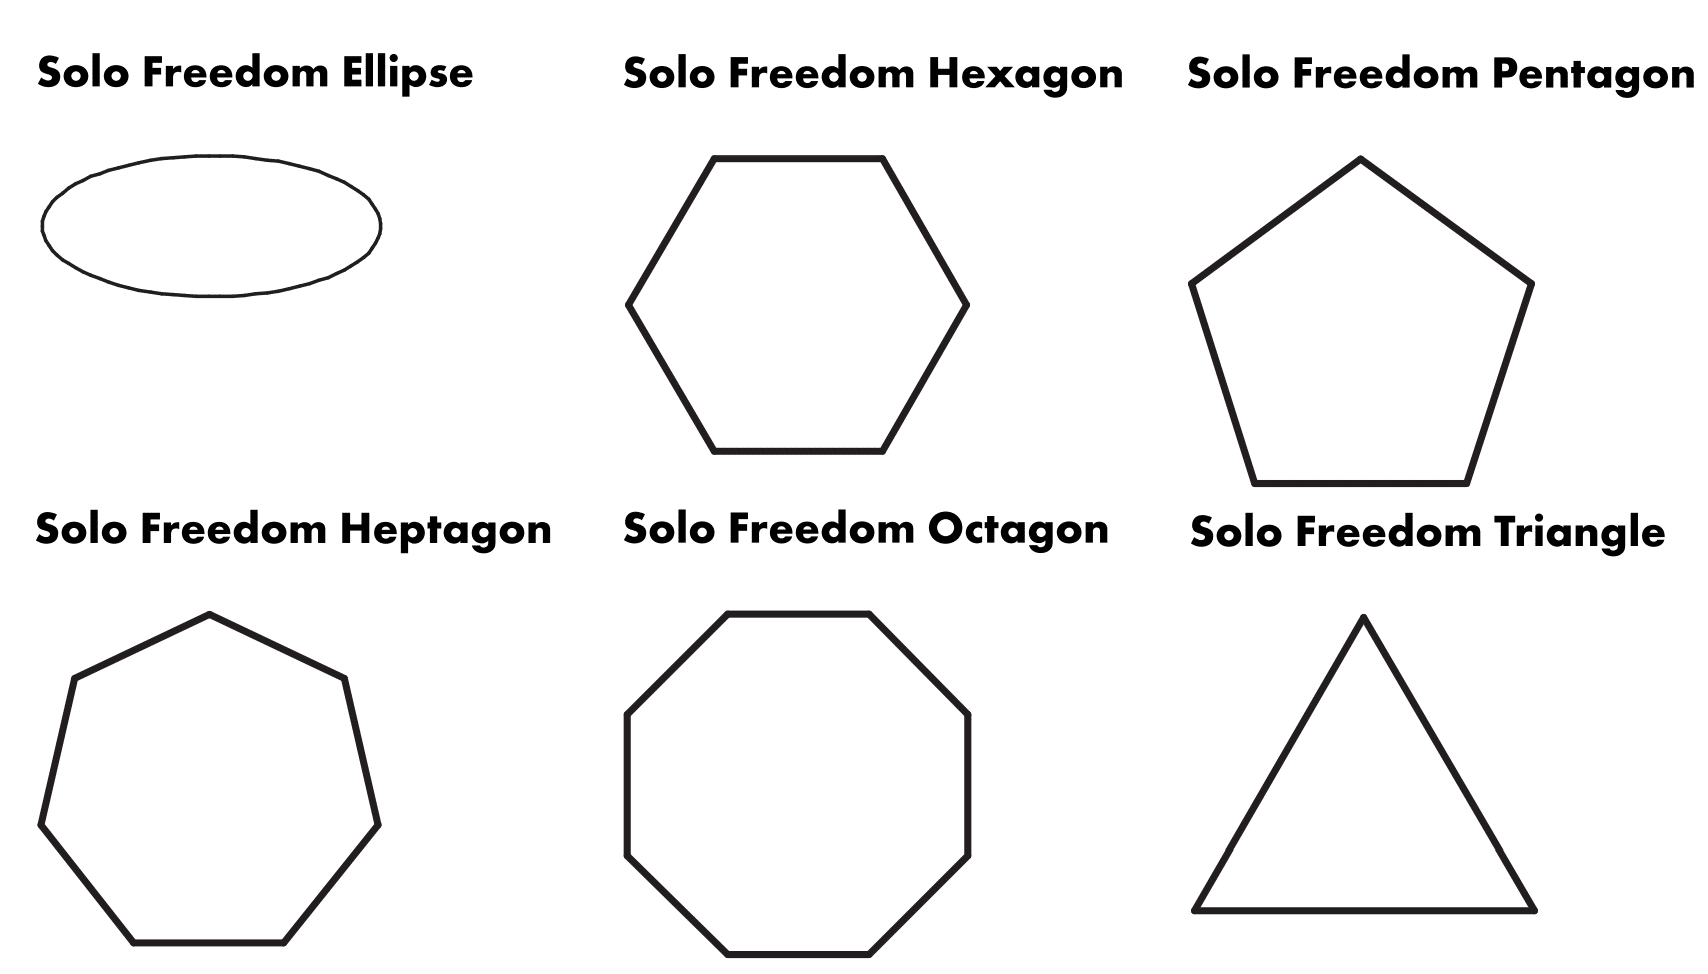 ecophon-solo-freedom-uitvoeringen